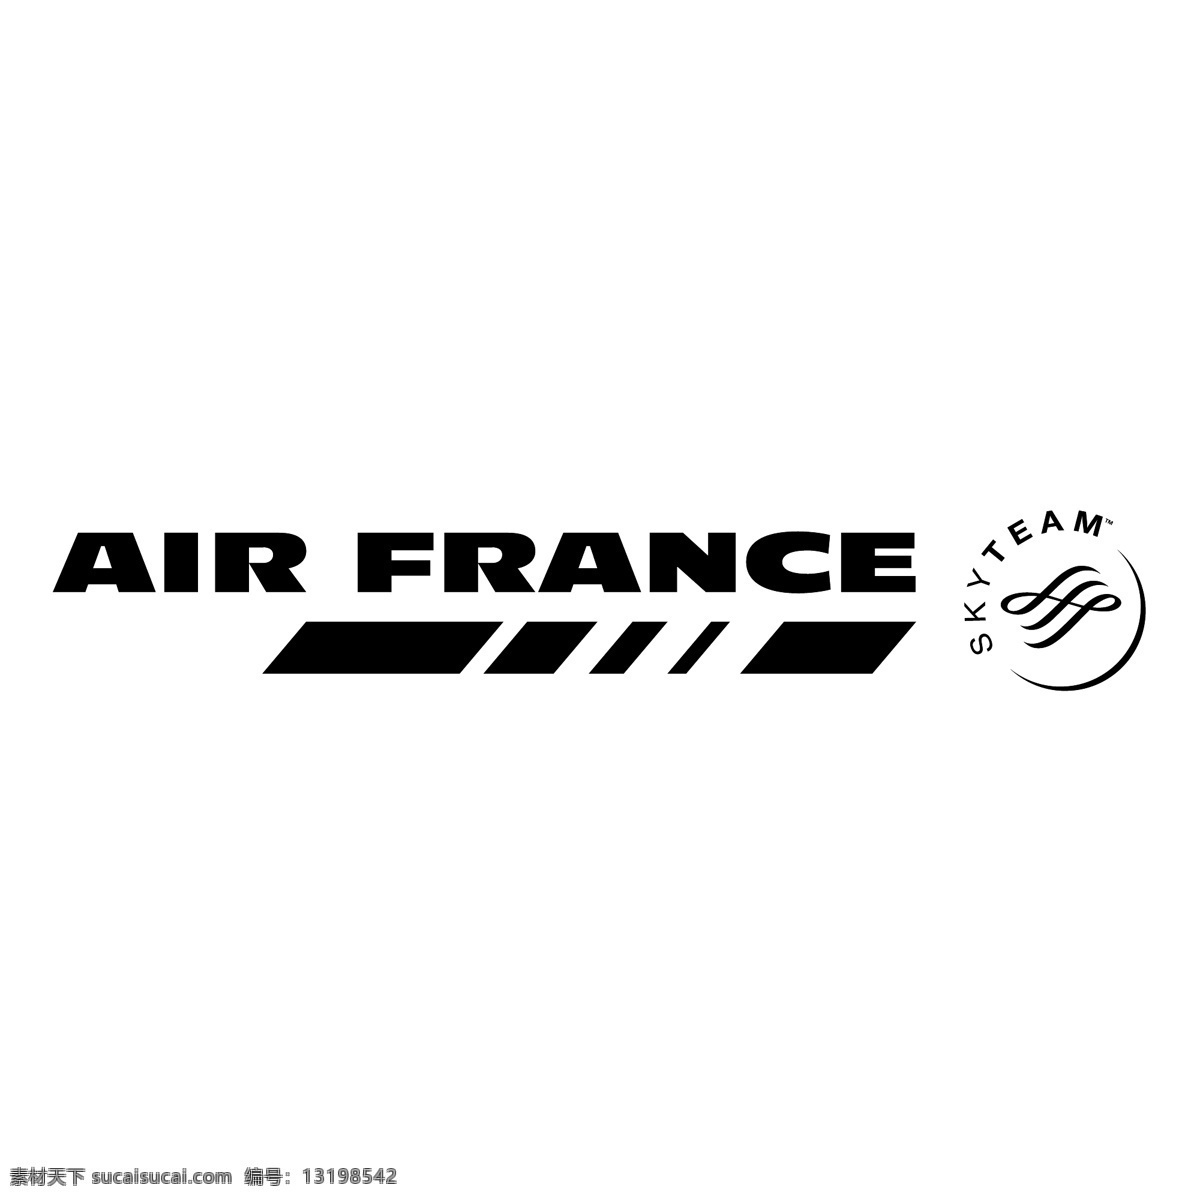 法国航空公司 自由 法国 航空 标志 法航 psd源文件 logo设计